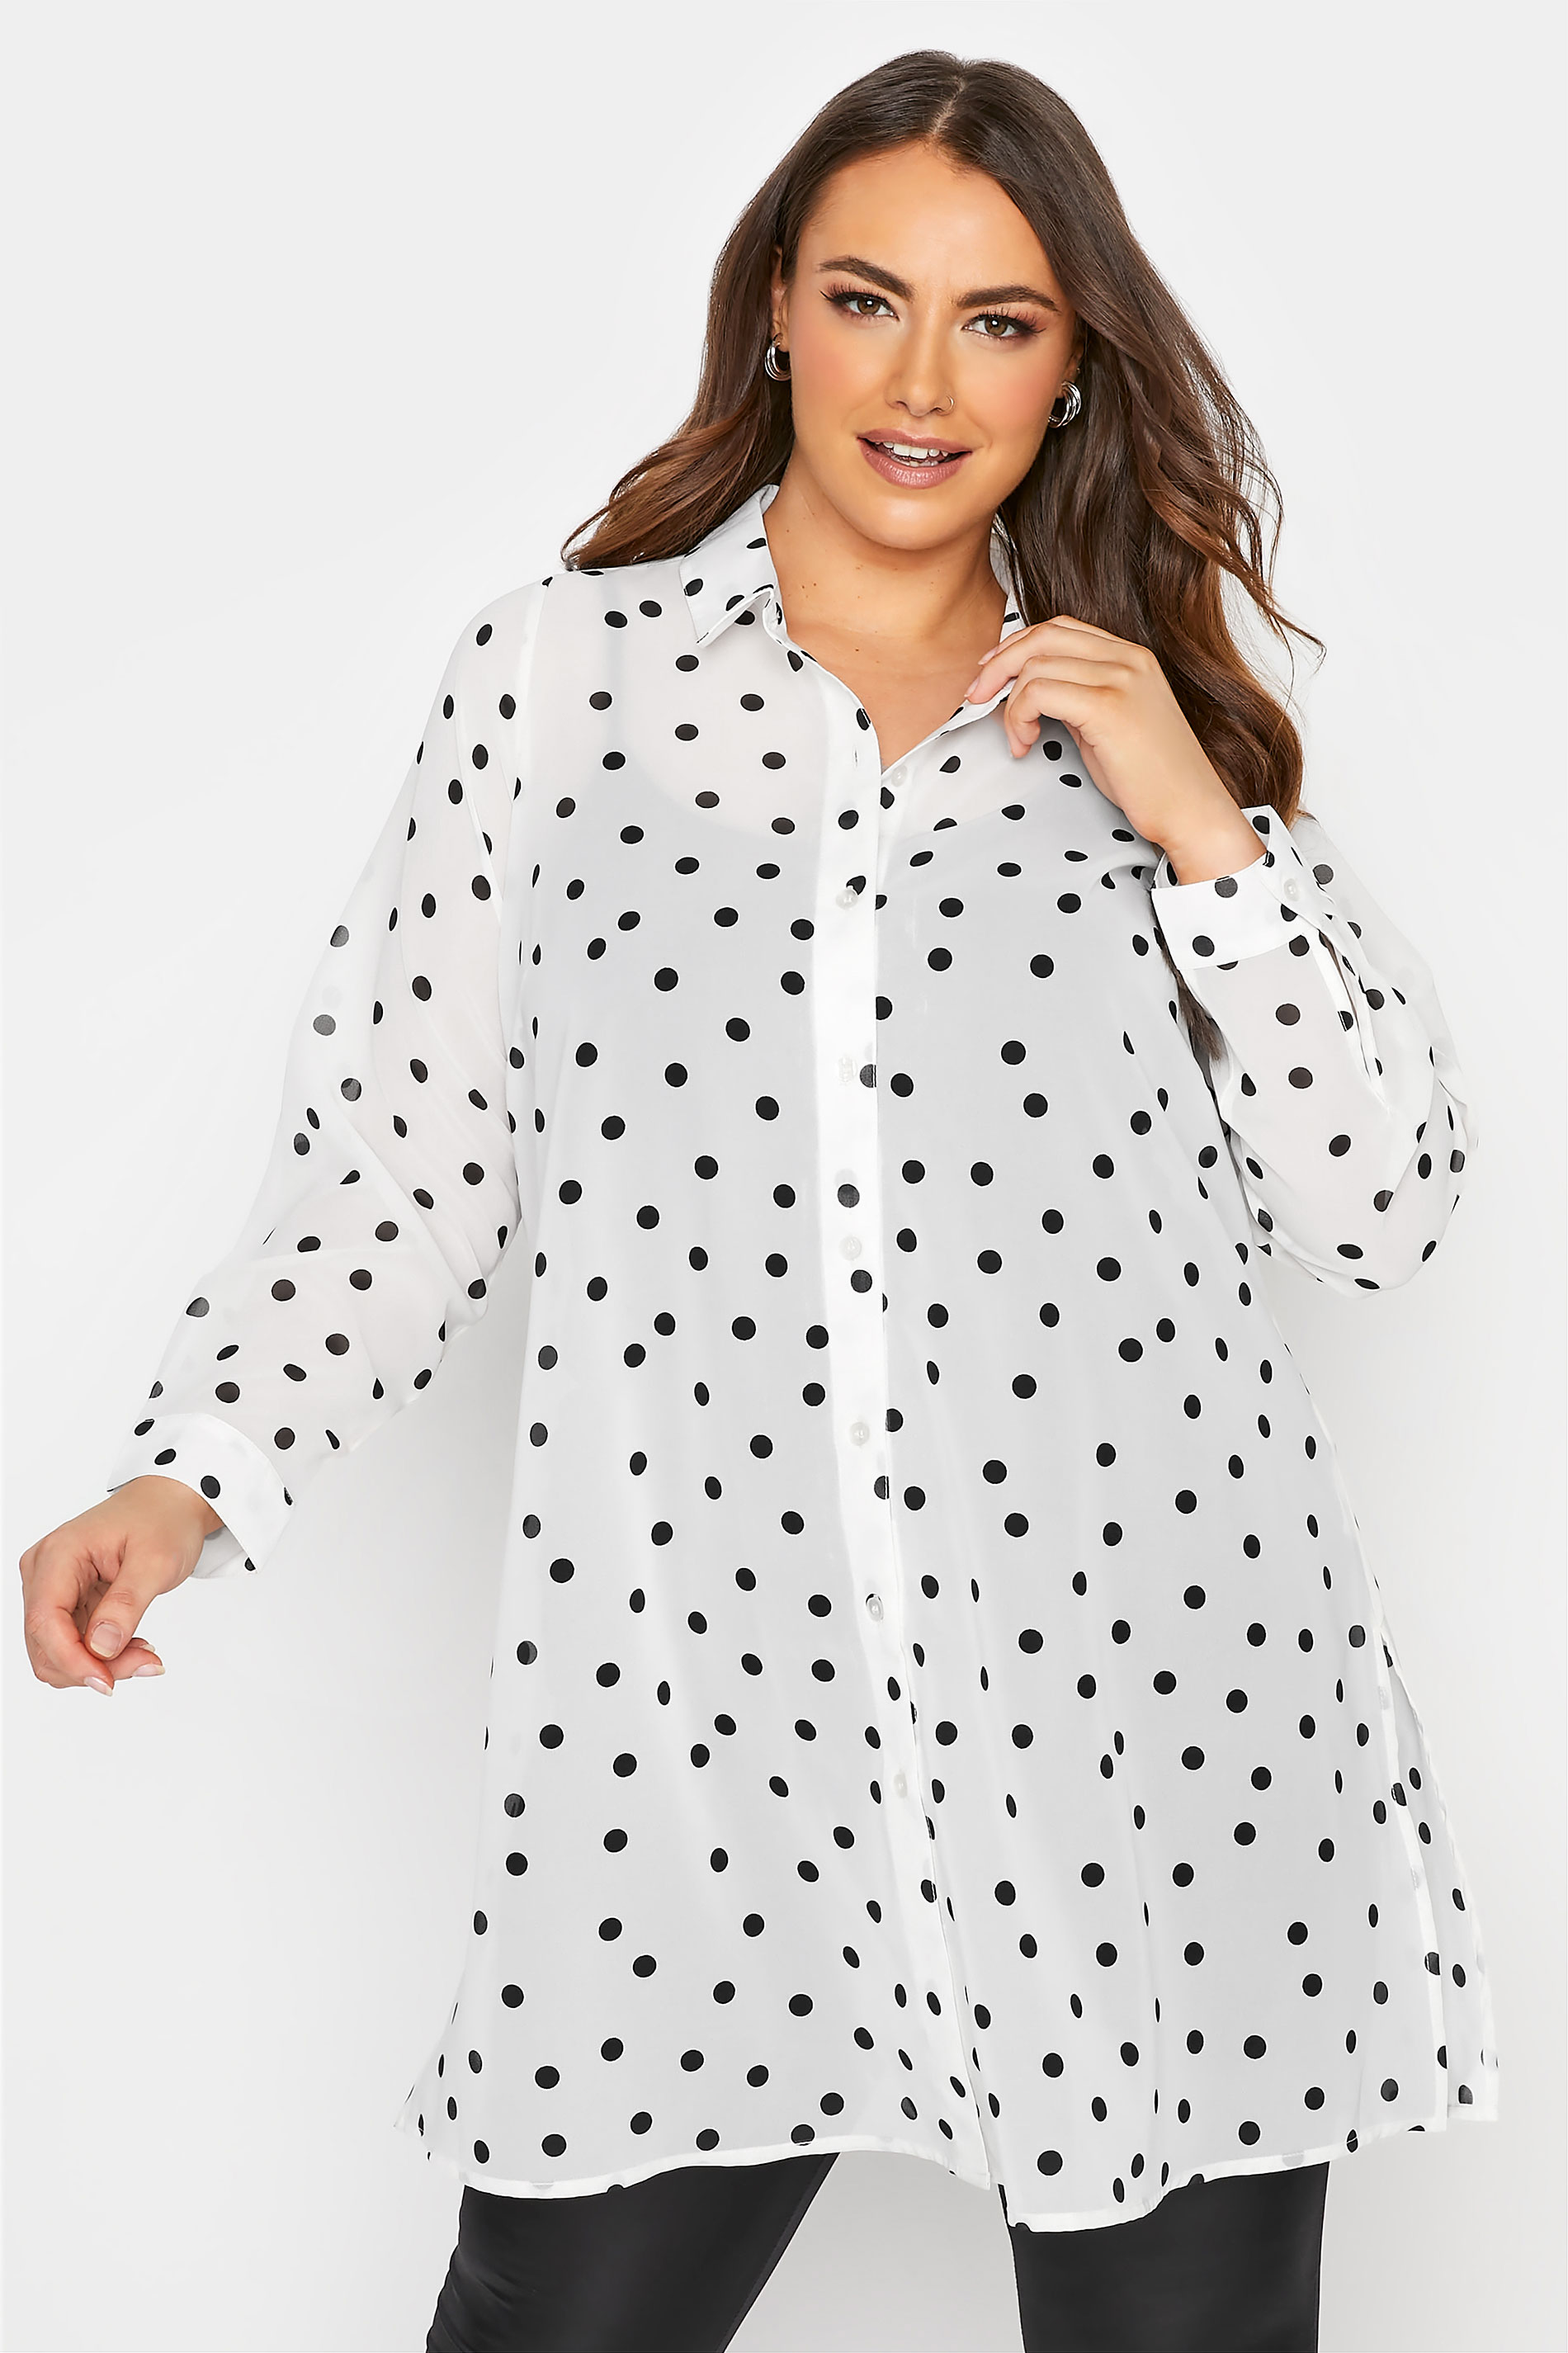 Yours Clothing Women's Plus Size Black & White Polka Dot Print Tankini Top 